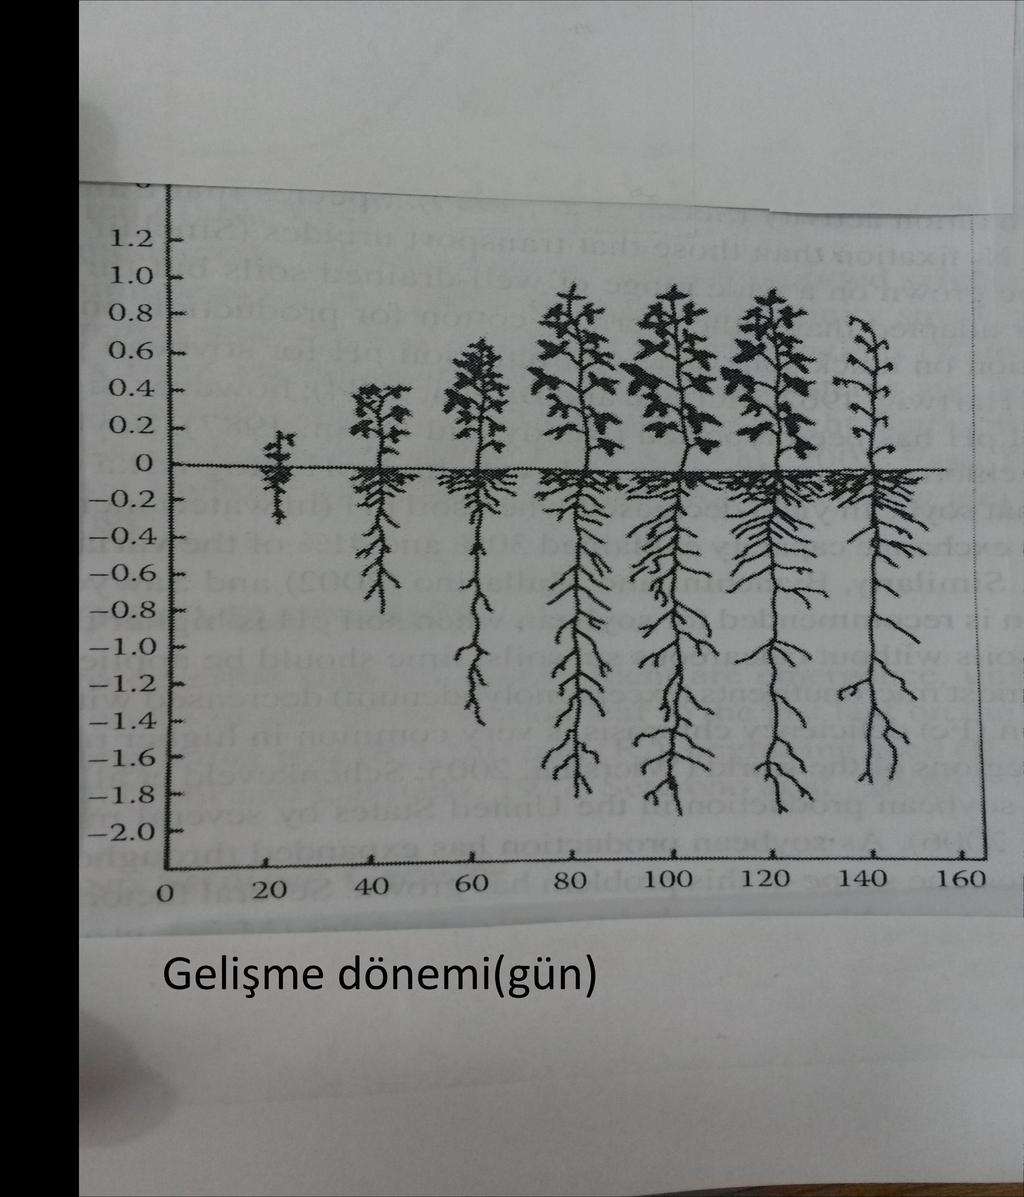 Şekil-1: Gelişme dönemine göre soya bitkisinin kök derinliği ve Bitki boyu Şekil-1 den görüldüğü gibi soya bitkisinin en yoğun köklerinin (besin maddesi alan ve nodül(yumru) bulunan kökleri